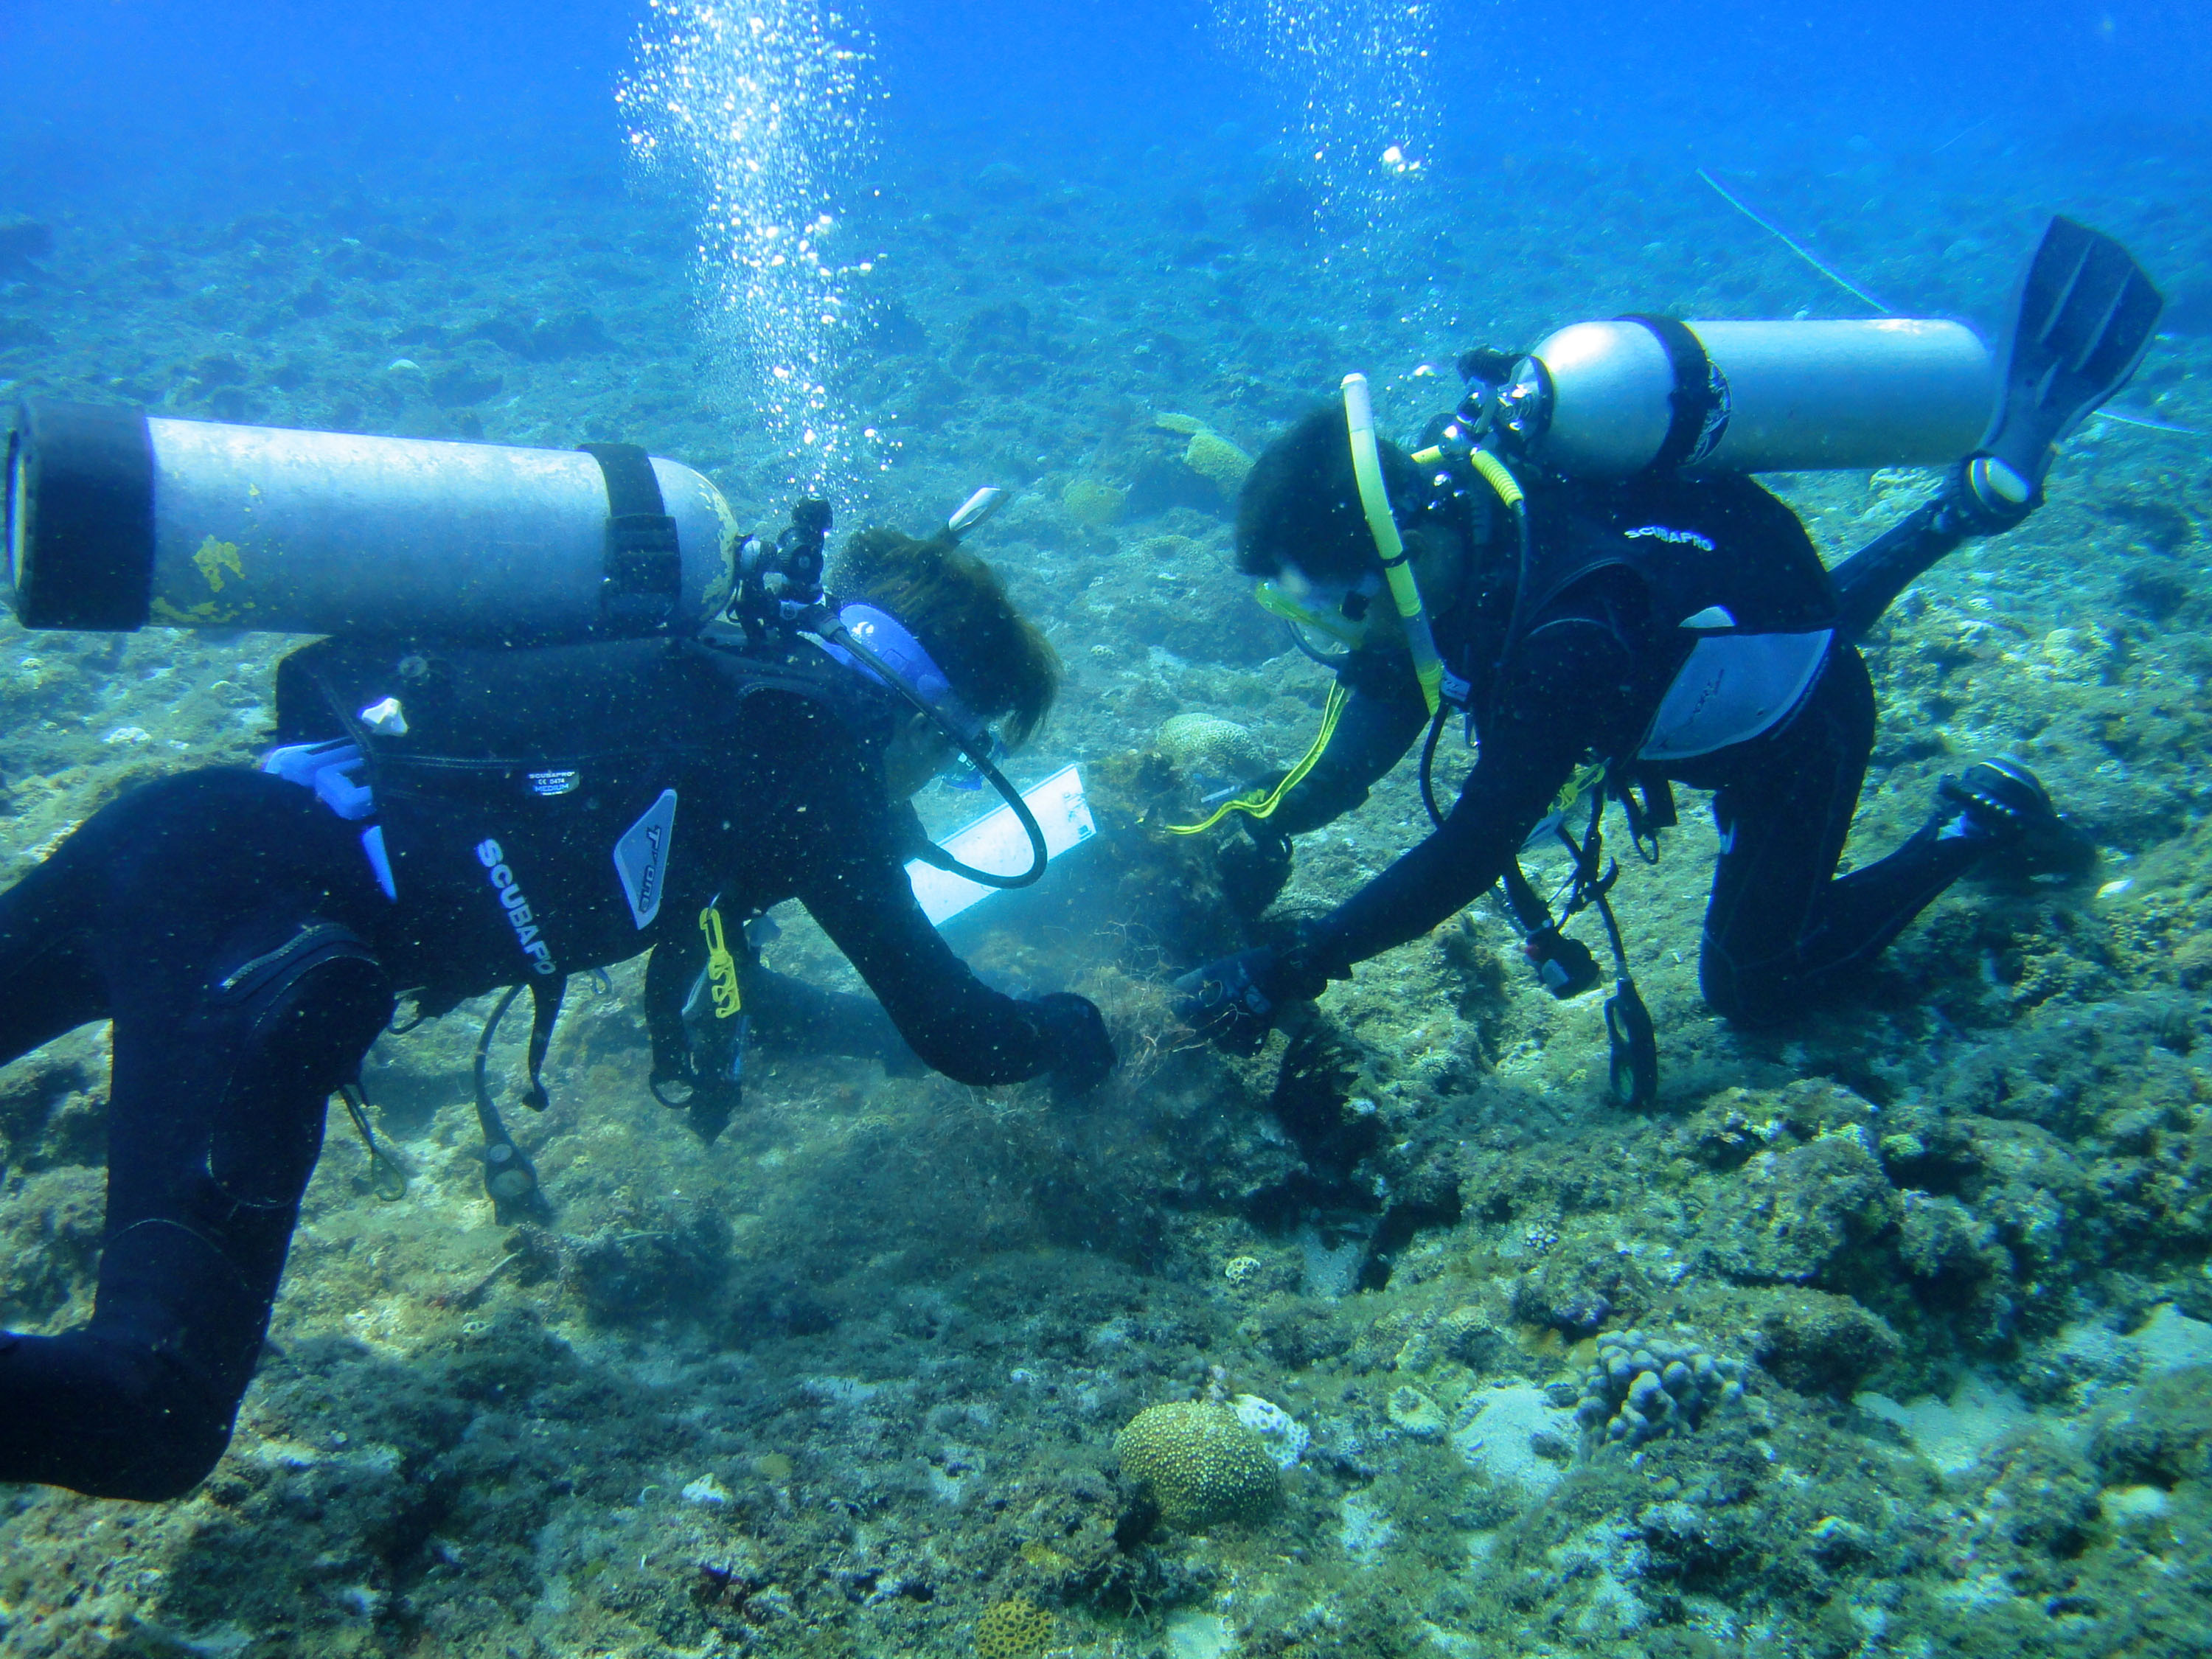 小琉球珊瑚礁劣化最严重。